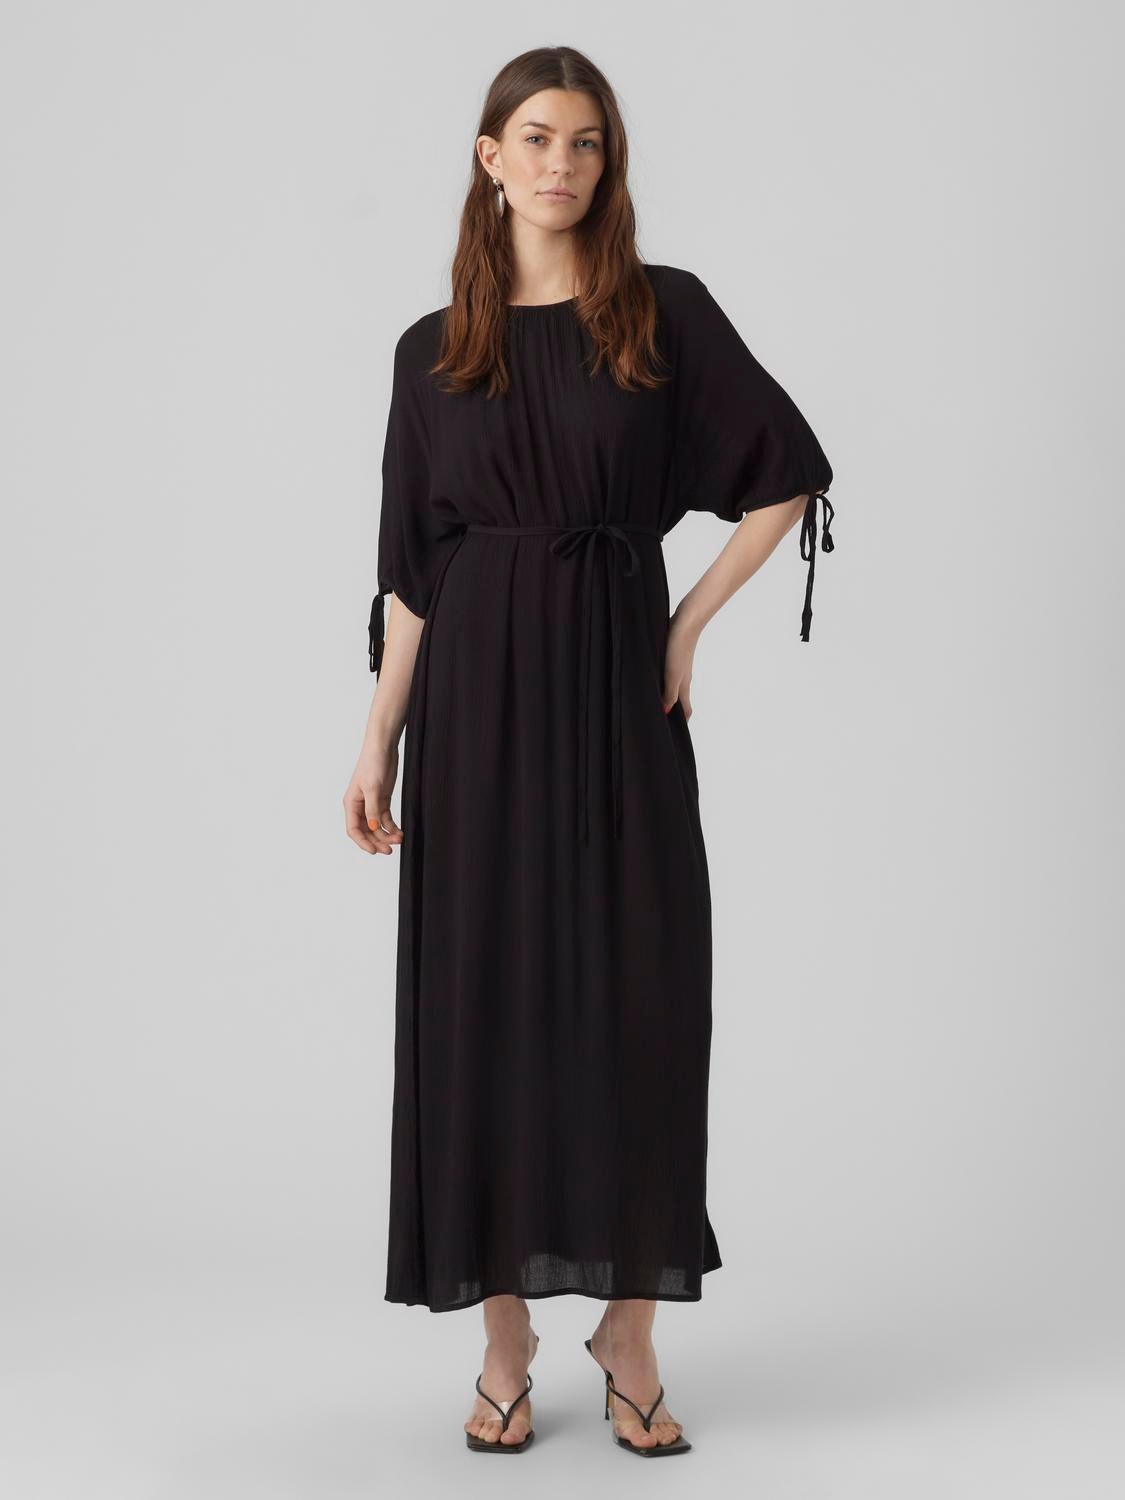 Vero Moda VMMENNY Long dress -Black - 10281885